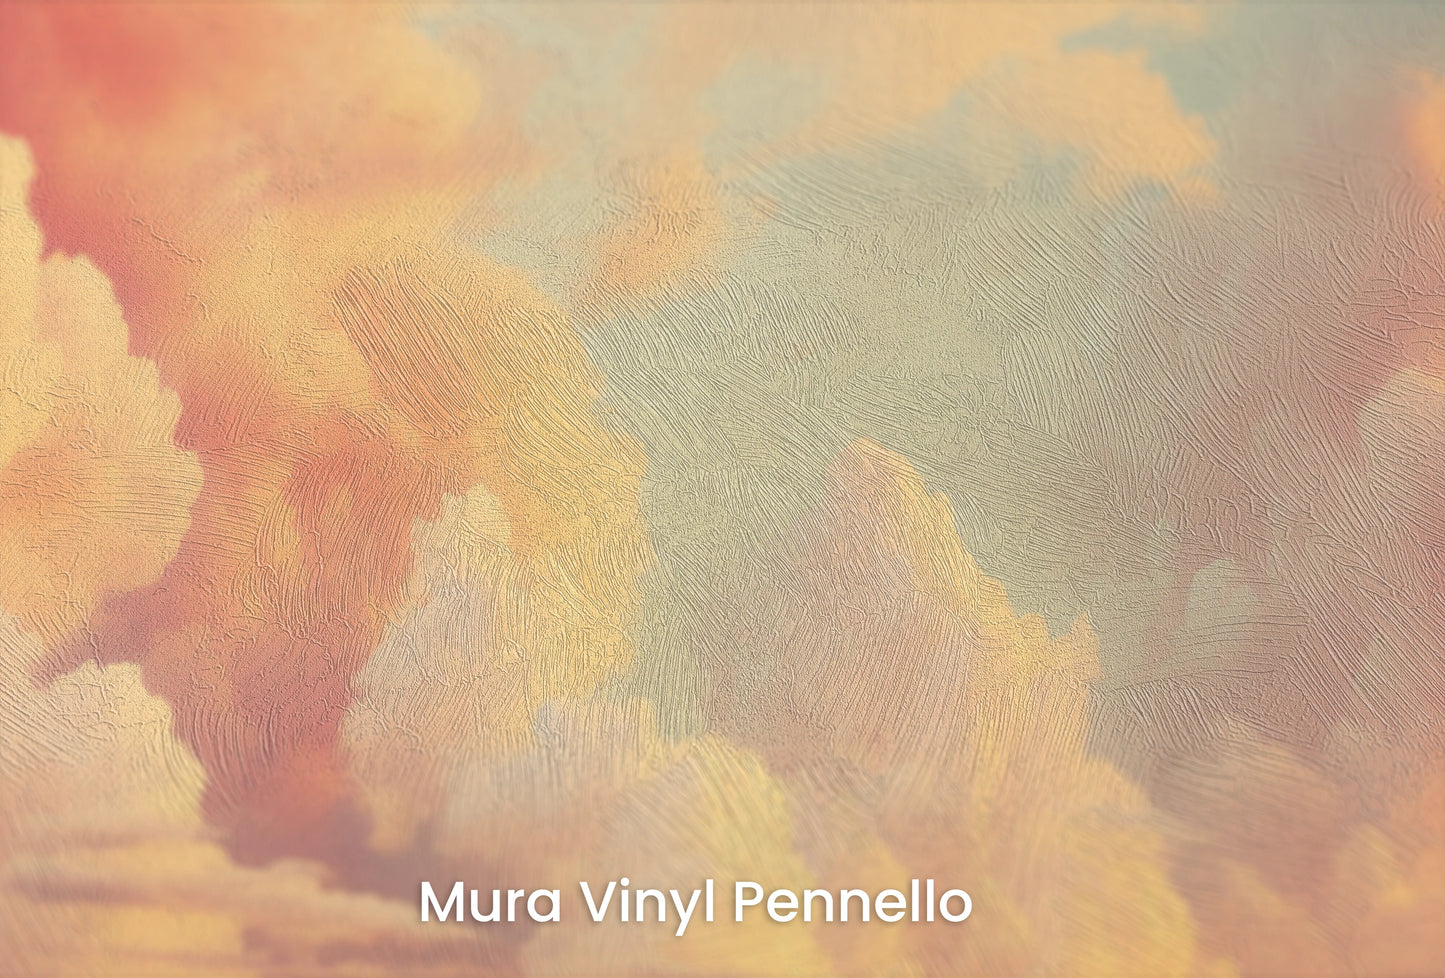 Zbliżenie na artystyczną fototapetę o nazwie Cotton Clouds na podłożu Mura Vinyl Pennello - faktura pociągnięć pędzla malarskiego.